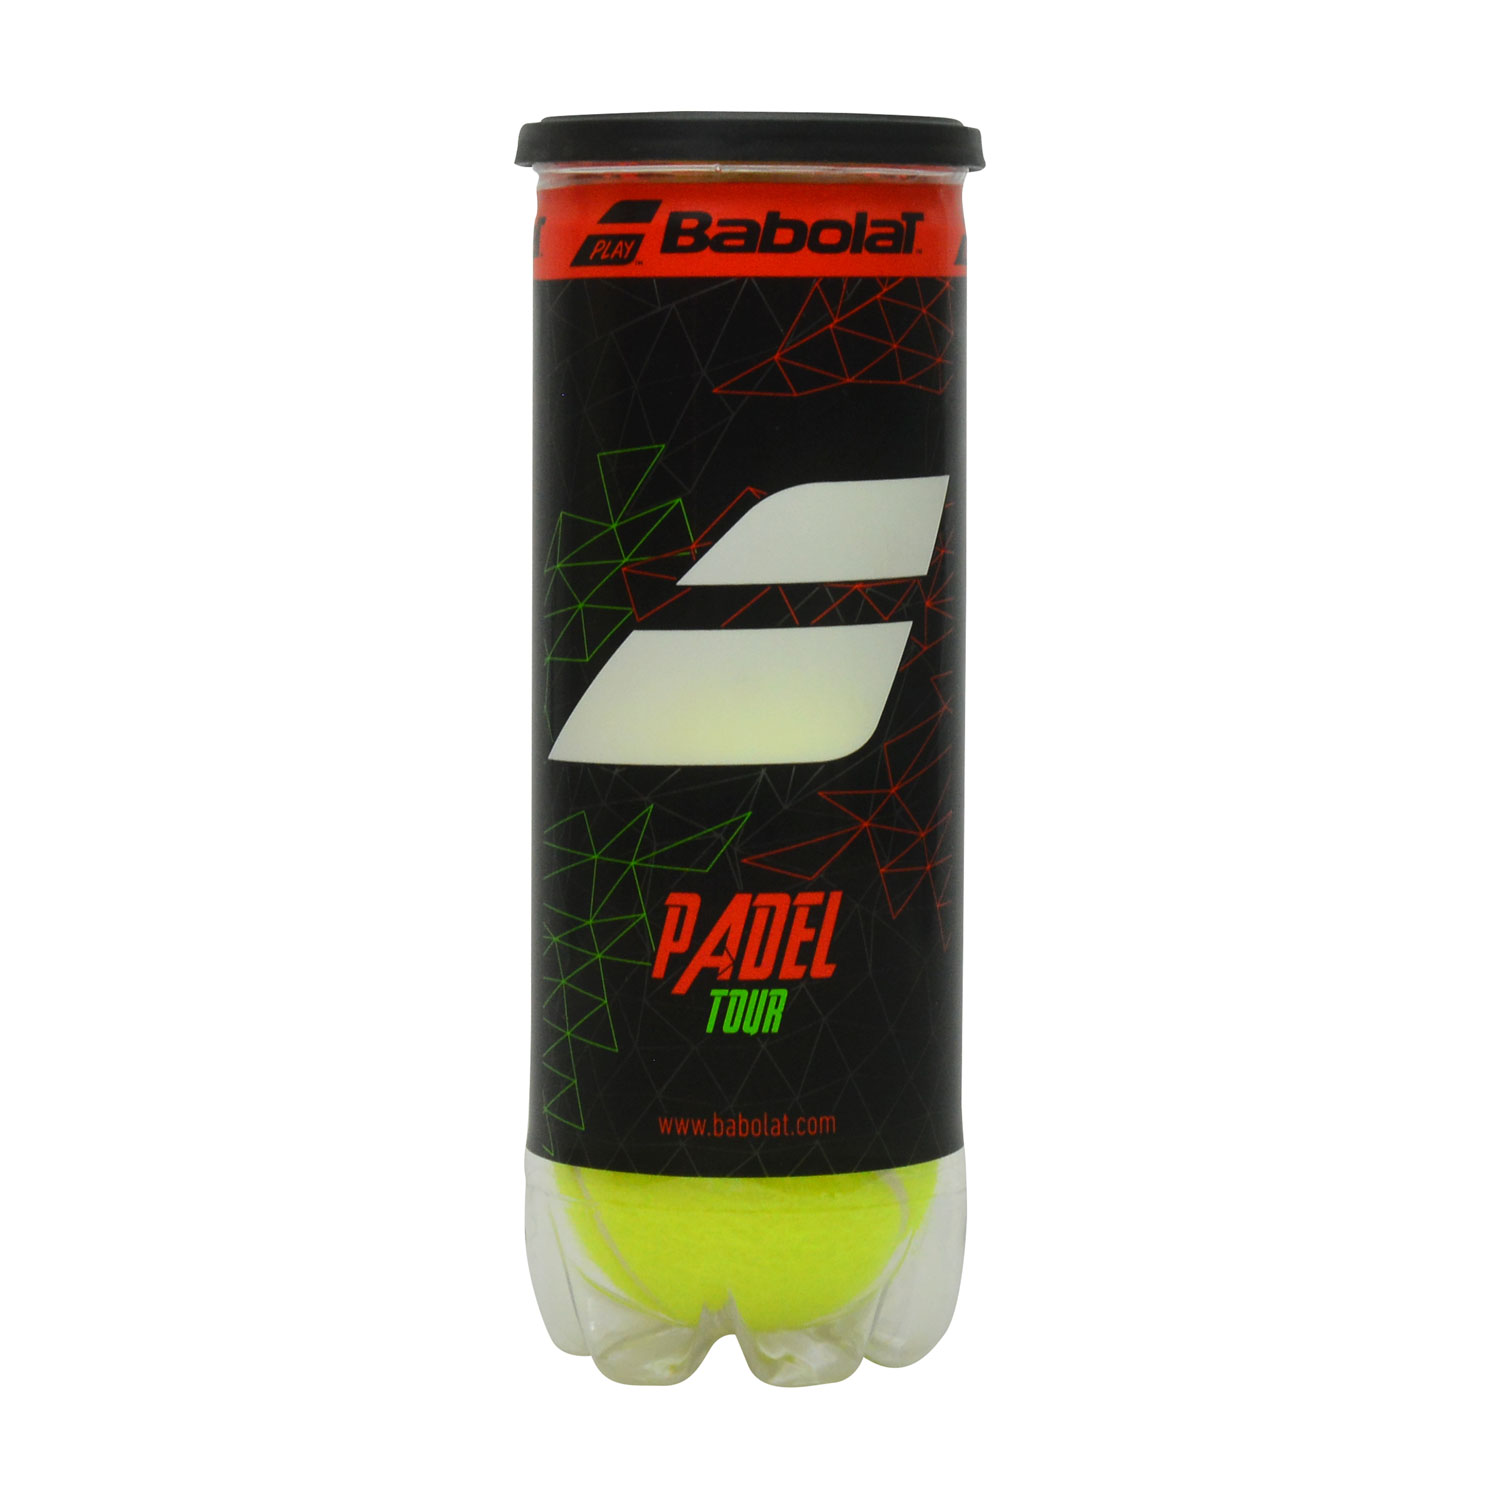 Babolat Padel Tour - 3 Balls Can